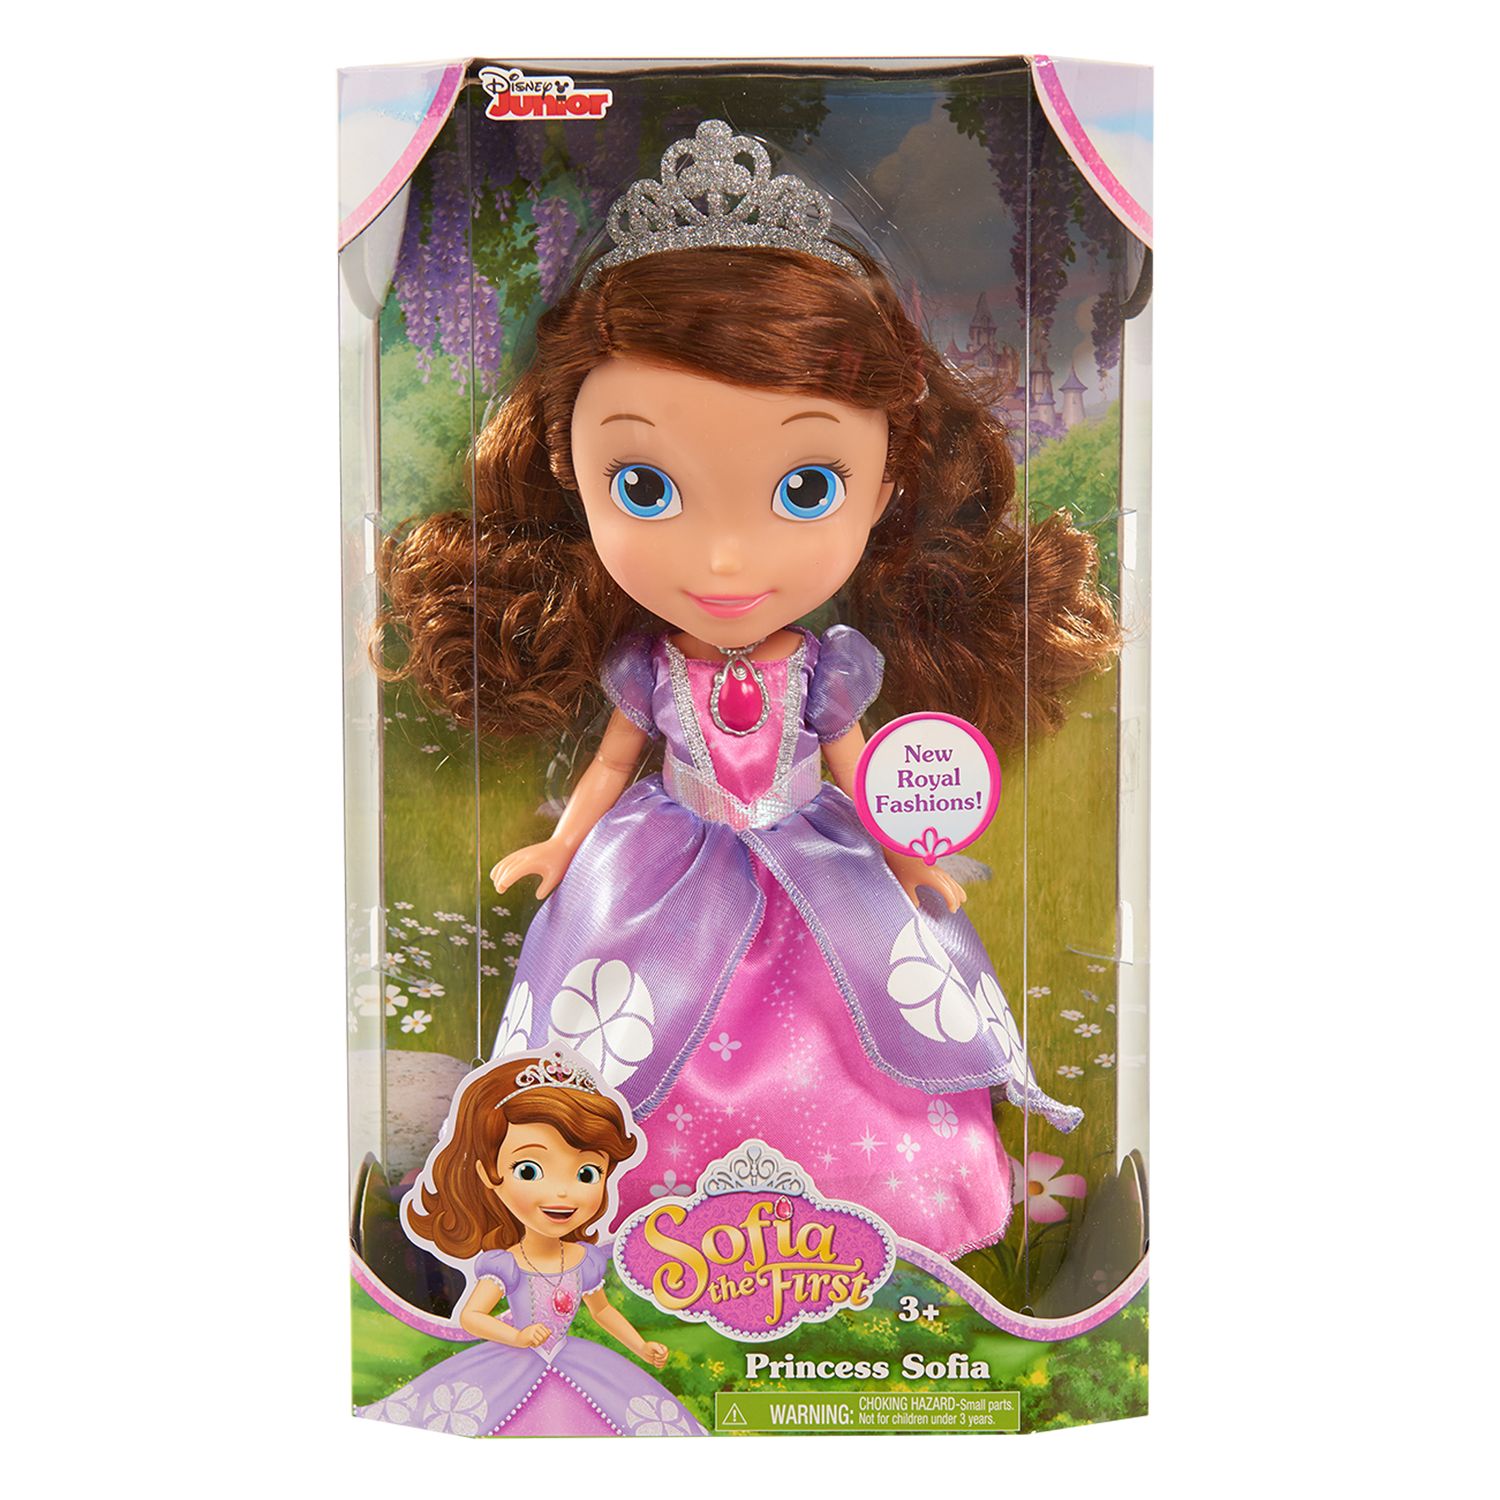 princes sofia doll